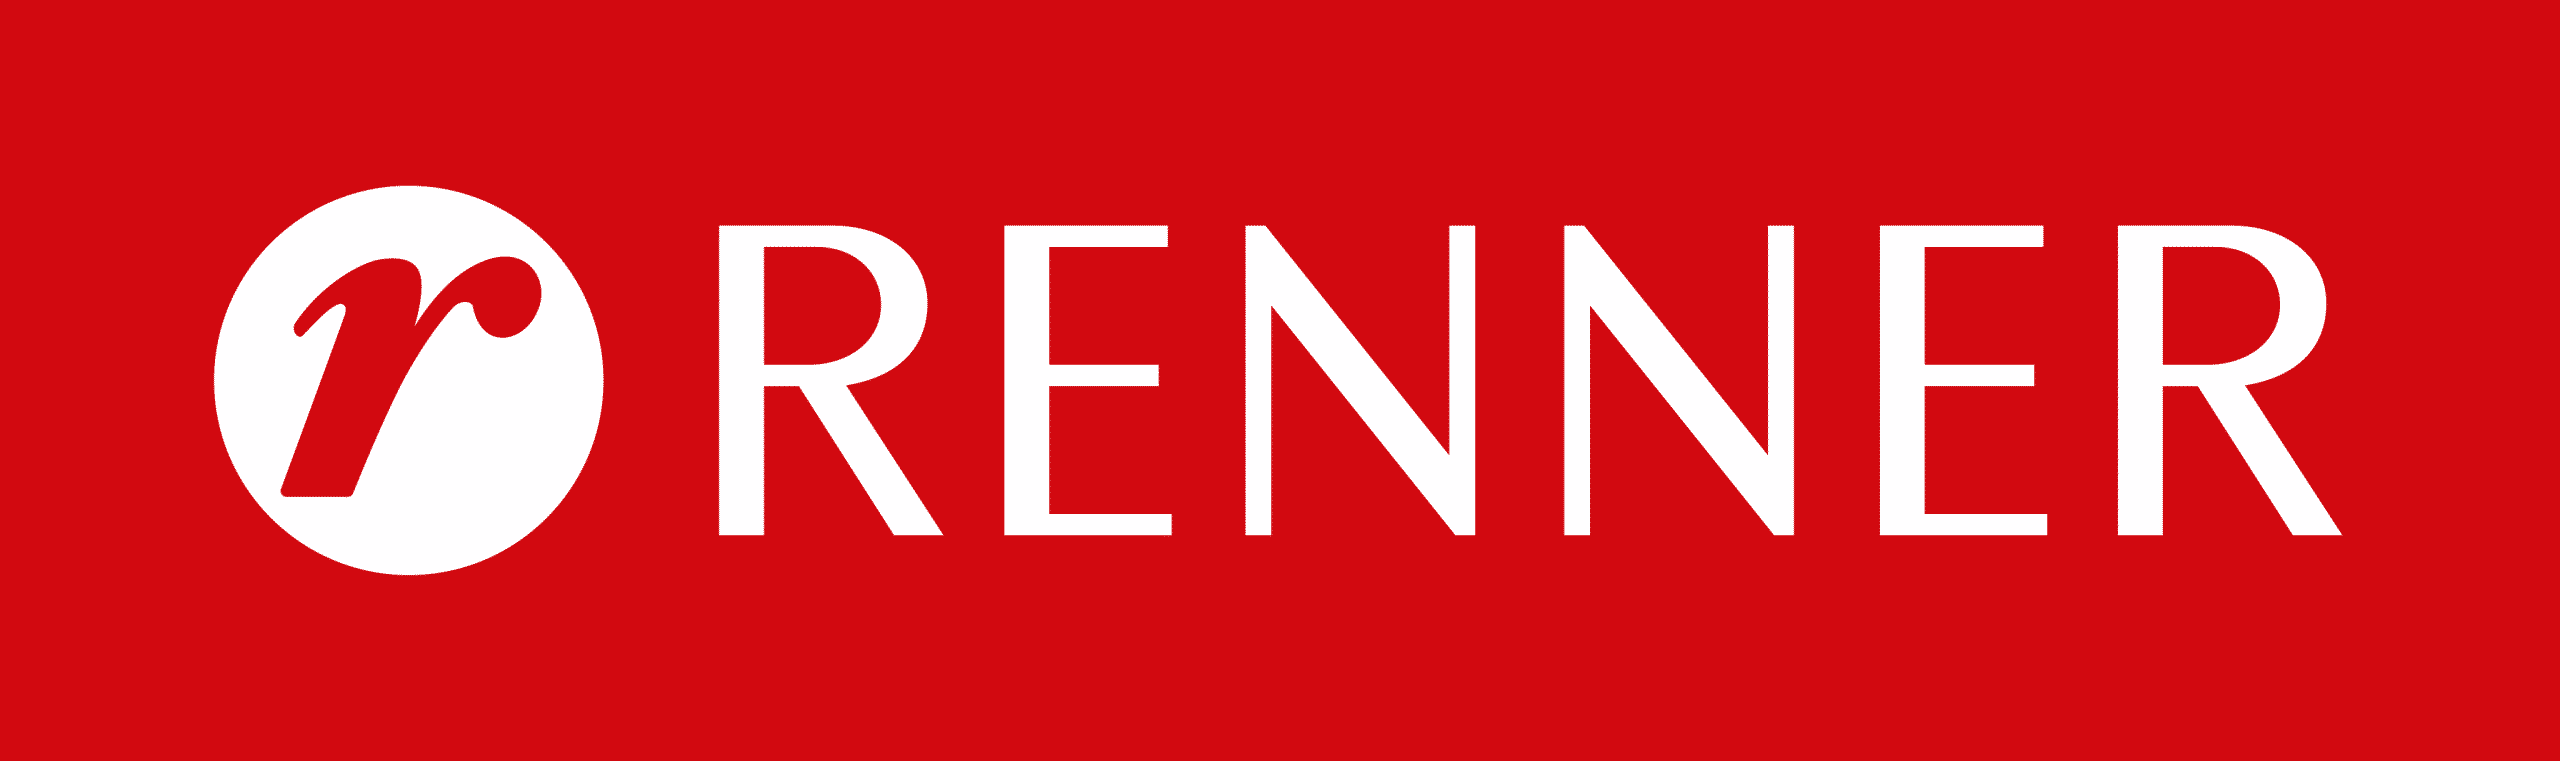 Lojas Renner - LREN3